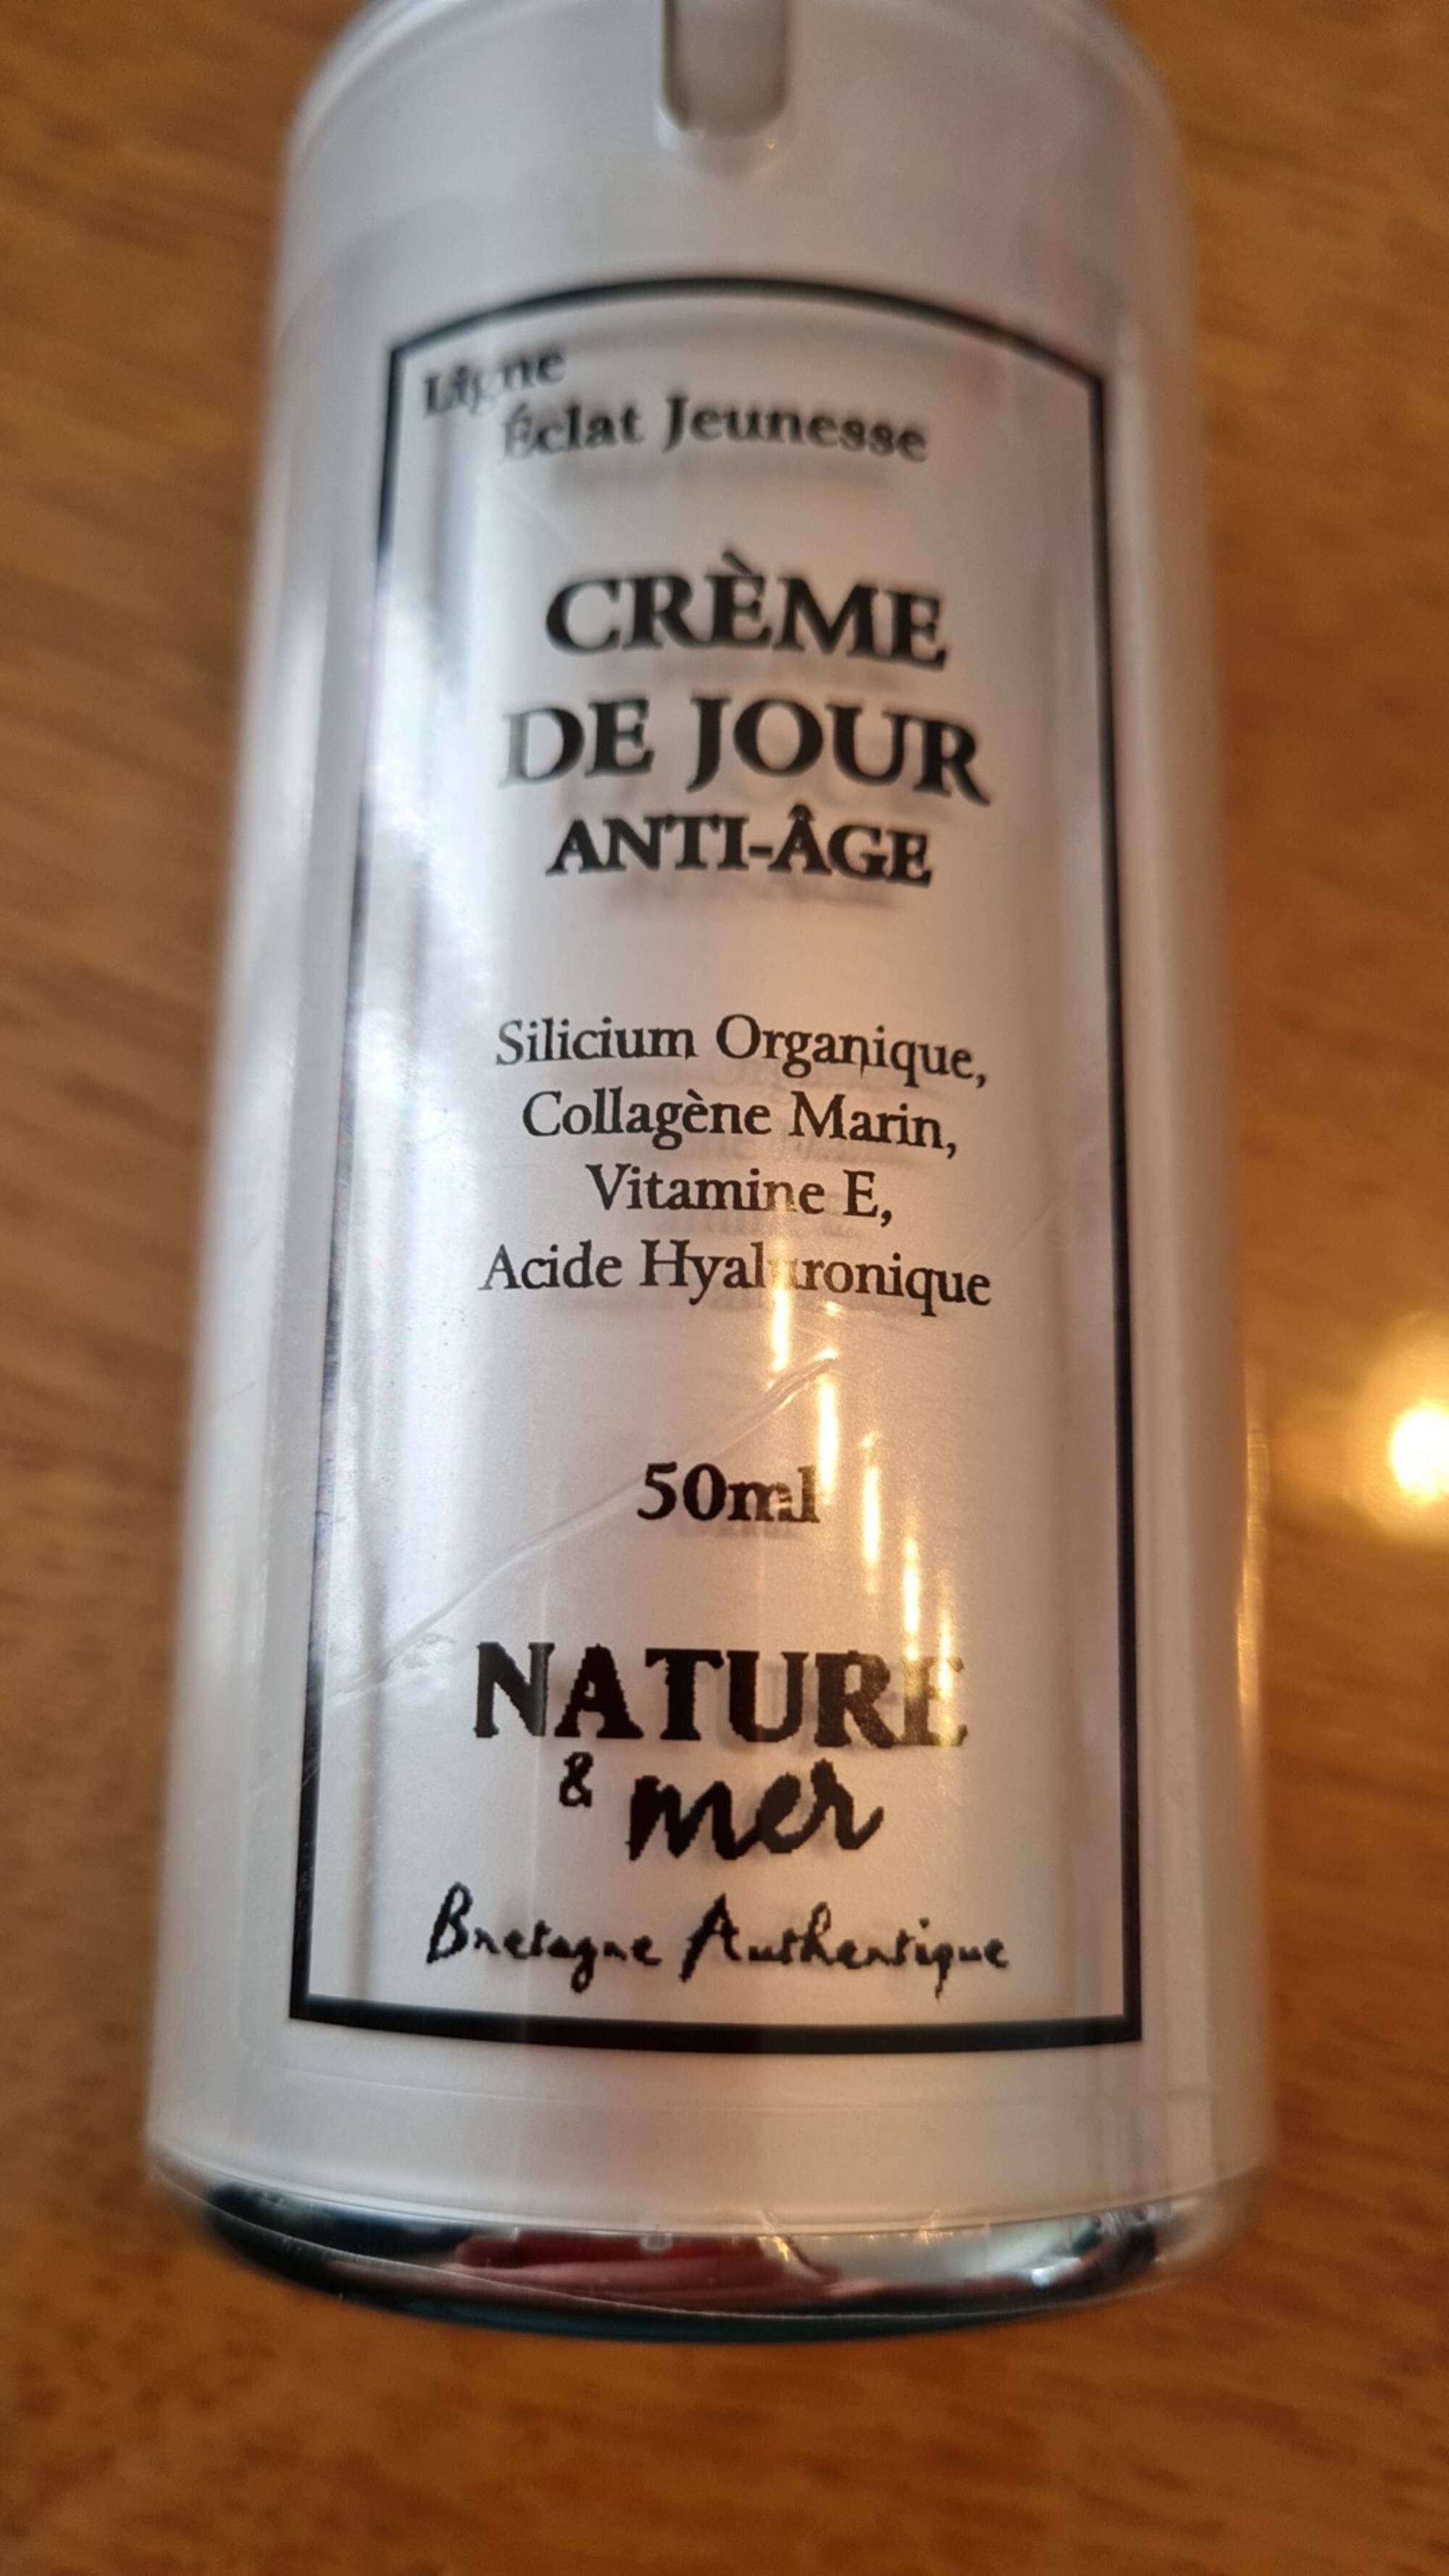 NATURE & MER - Crème de jour anti-âge